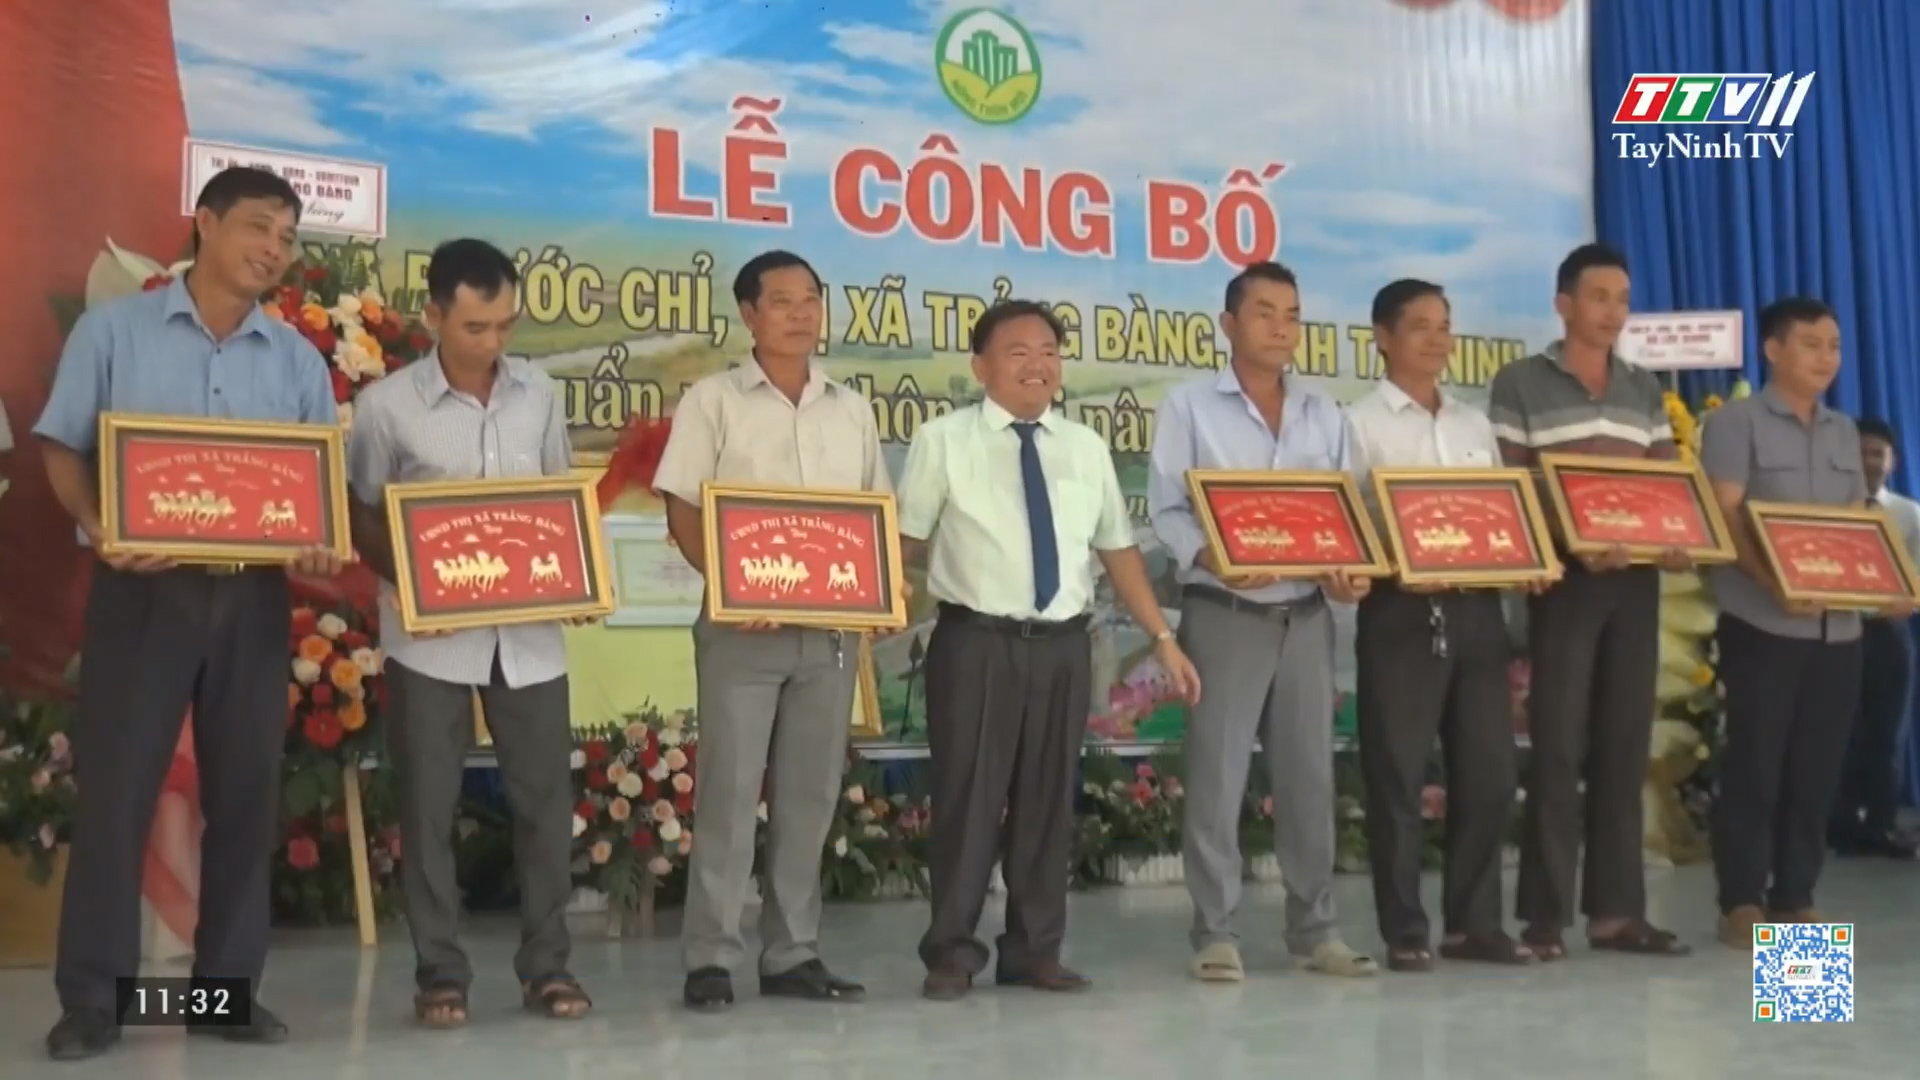 Thị xã Trảng Bàng công bố xã Phước Chỉ đạt chuẩn nông thôn mới nâng cao | TÂY NINH XÂY DỰNG NÔNG THÔN MỚI |TayNinhTV